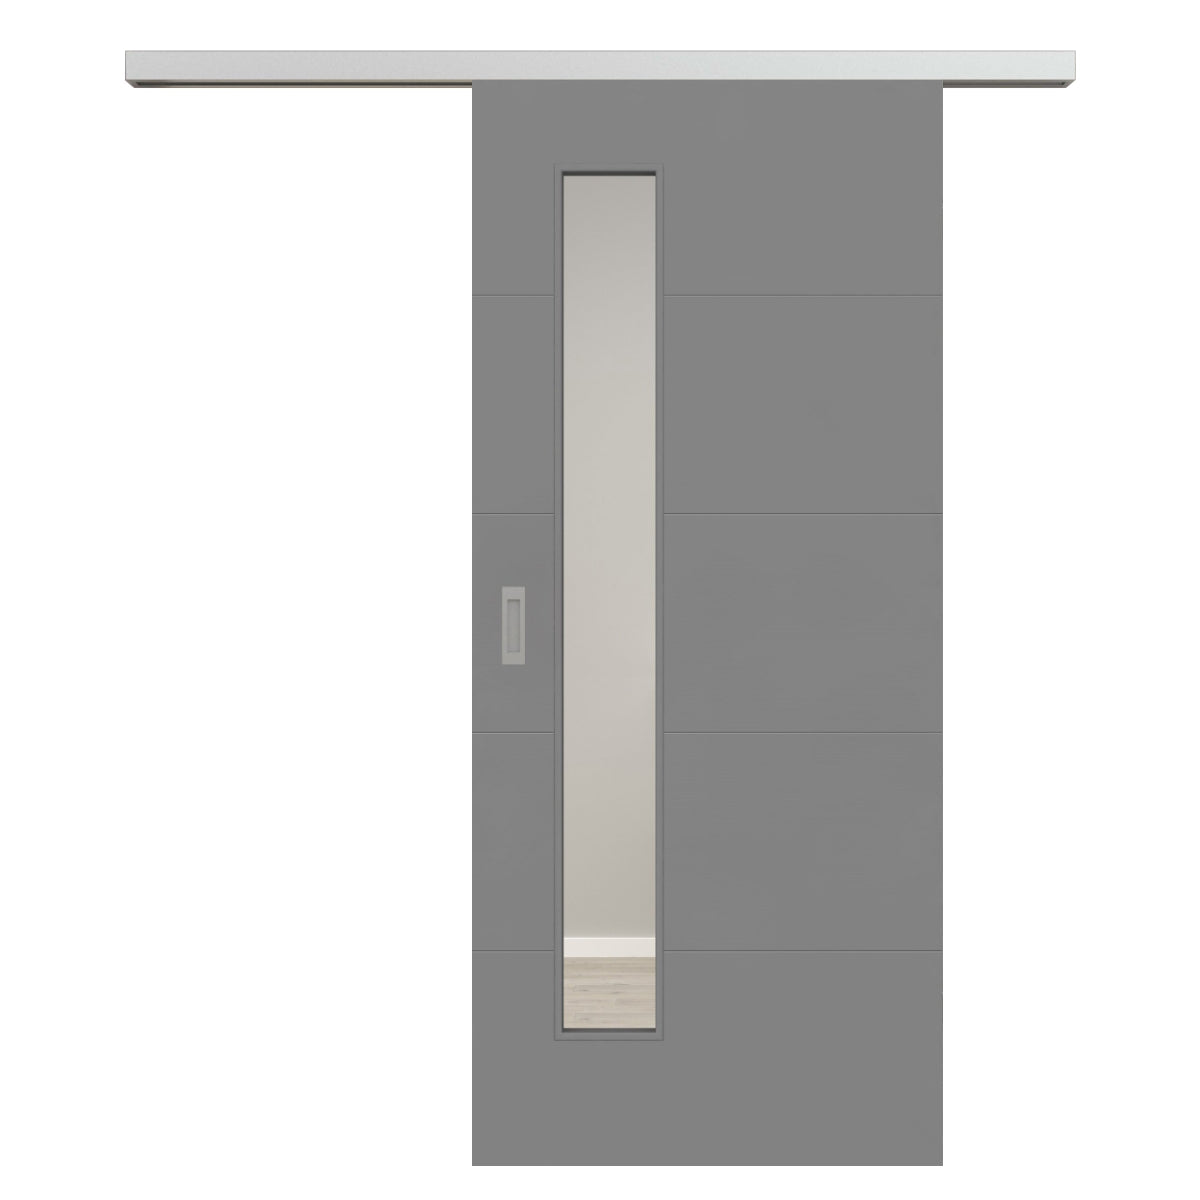 Schiebetür für Set mit Edelstahllaufkasten mit Lichtausschnitt grau 4 Rillen quer - Modell Designtür Q47LAS